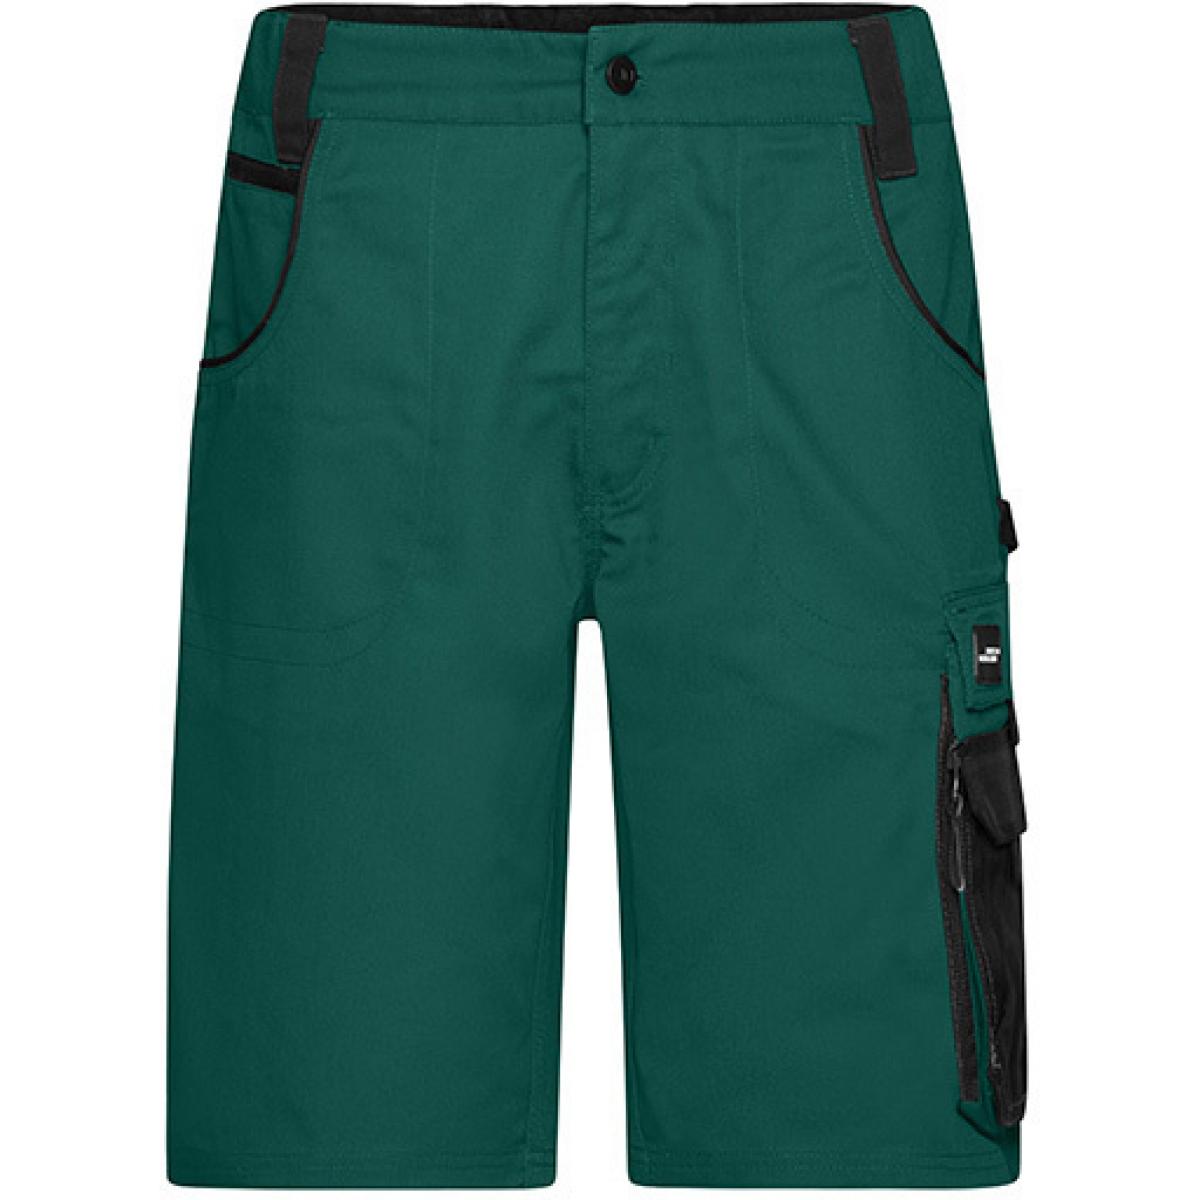 Hersteller: James+Nicholson Herstellernummer: JN835 Artikelbezeichnung: Herren Hose, Workwear Bermudas -STRONG- Farbe: Dark Green/Black